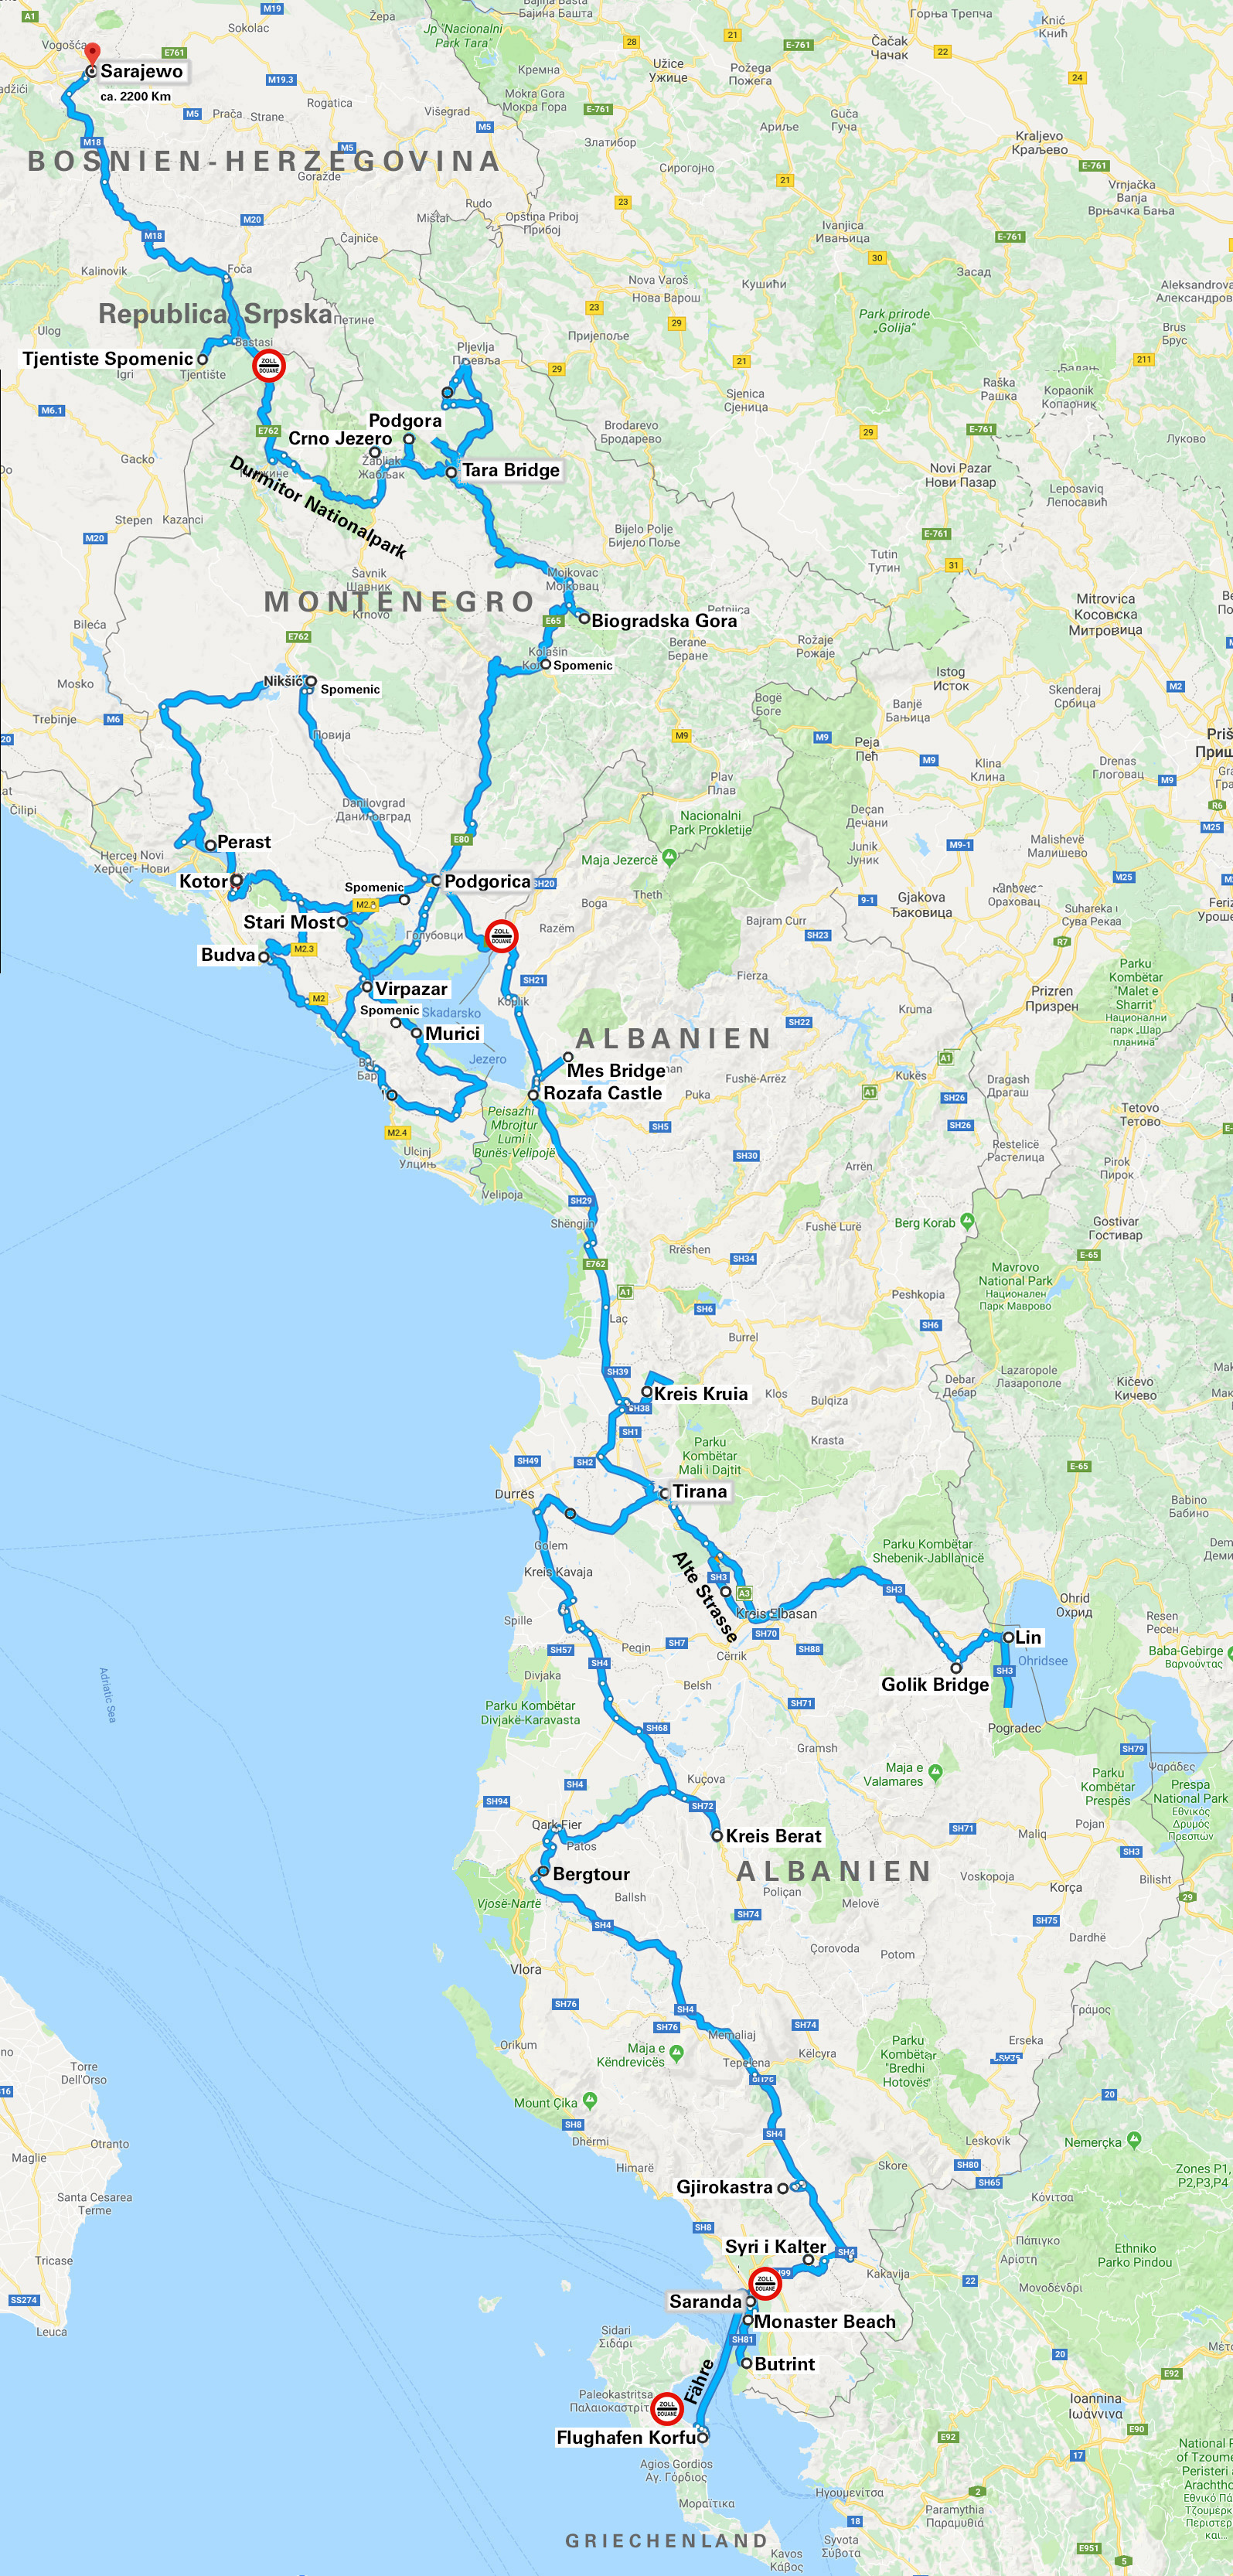 Albanien Route 2018